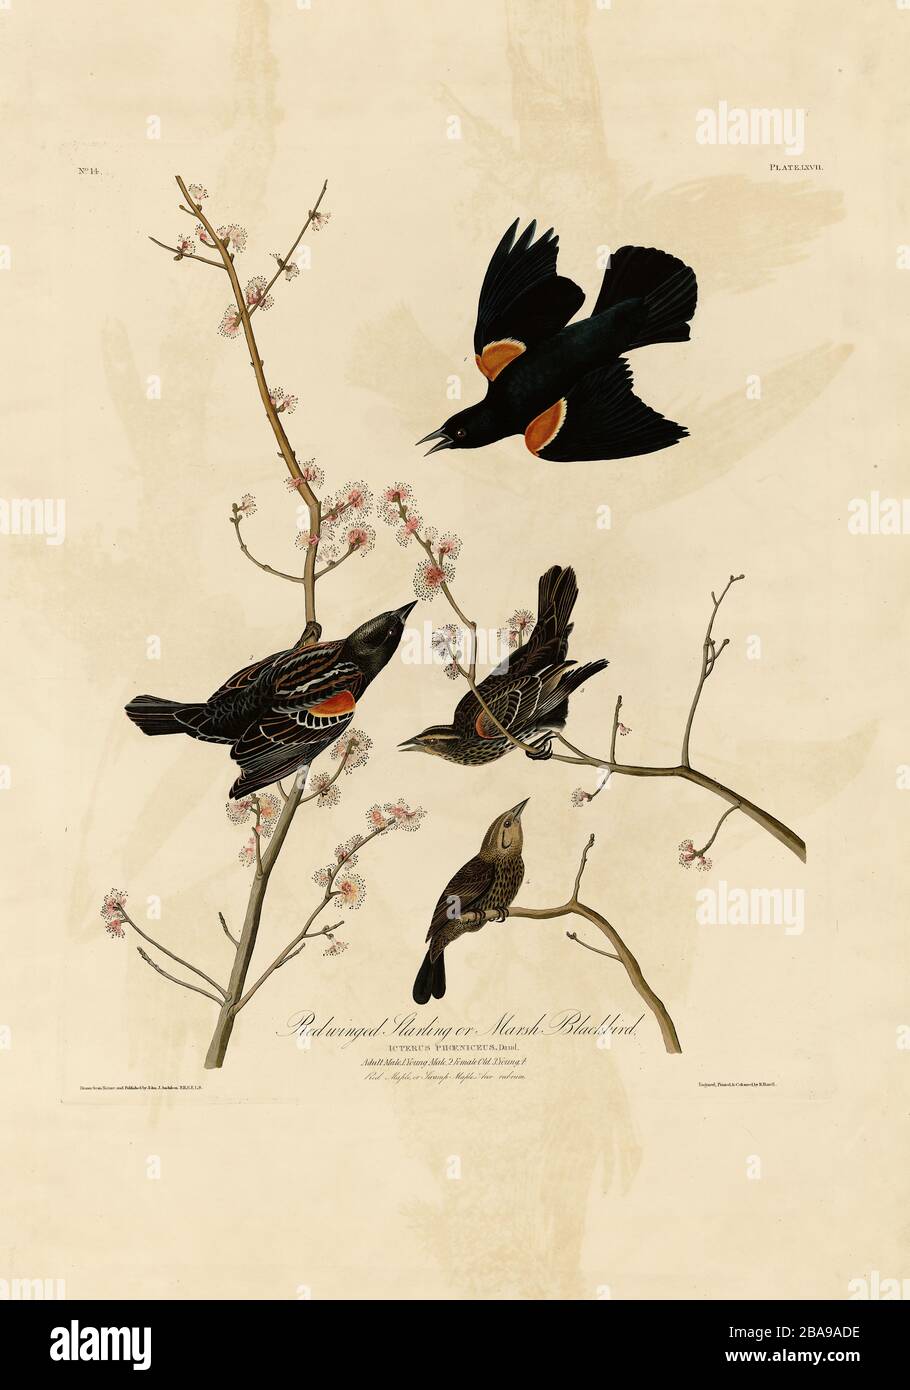 Platte 67 Roter geflügelter Starling oder Marsh Blackbird von The Birds of America Folio (187-184) von John James Audubon - hochauflösendes Qualitätsbild Stockfoto